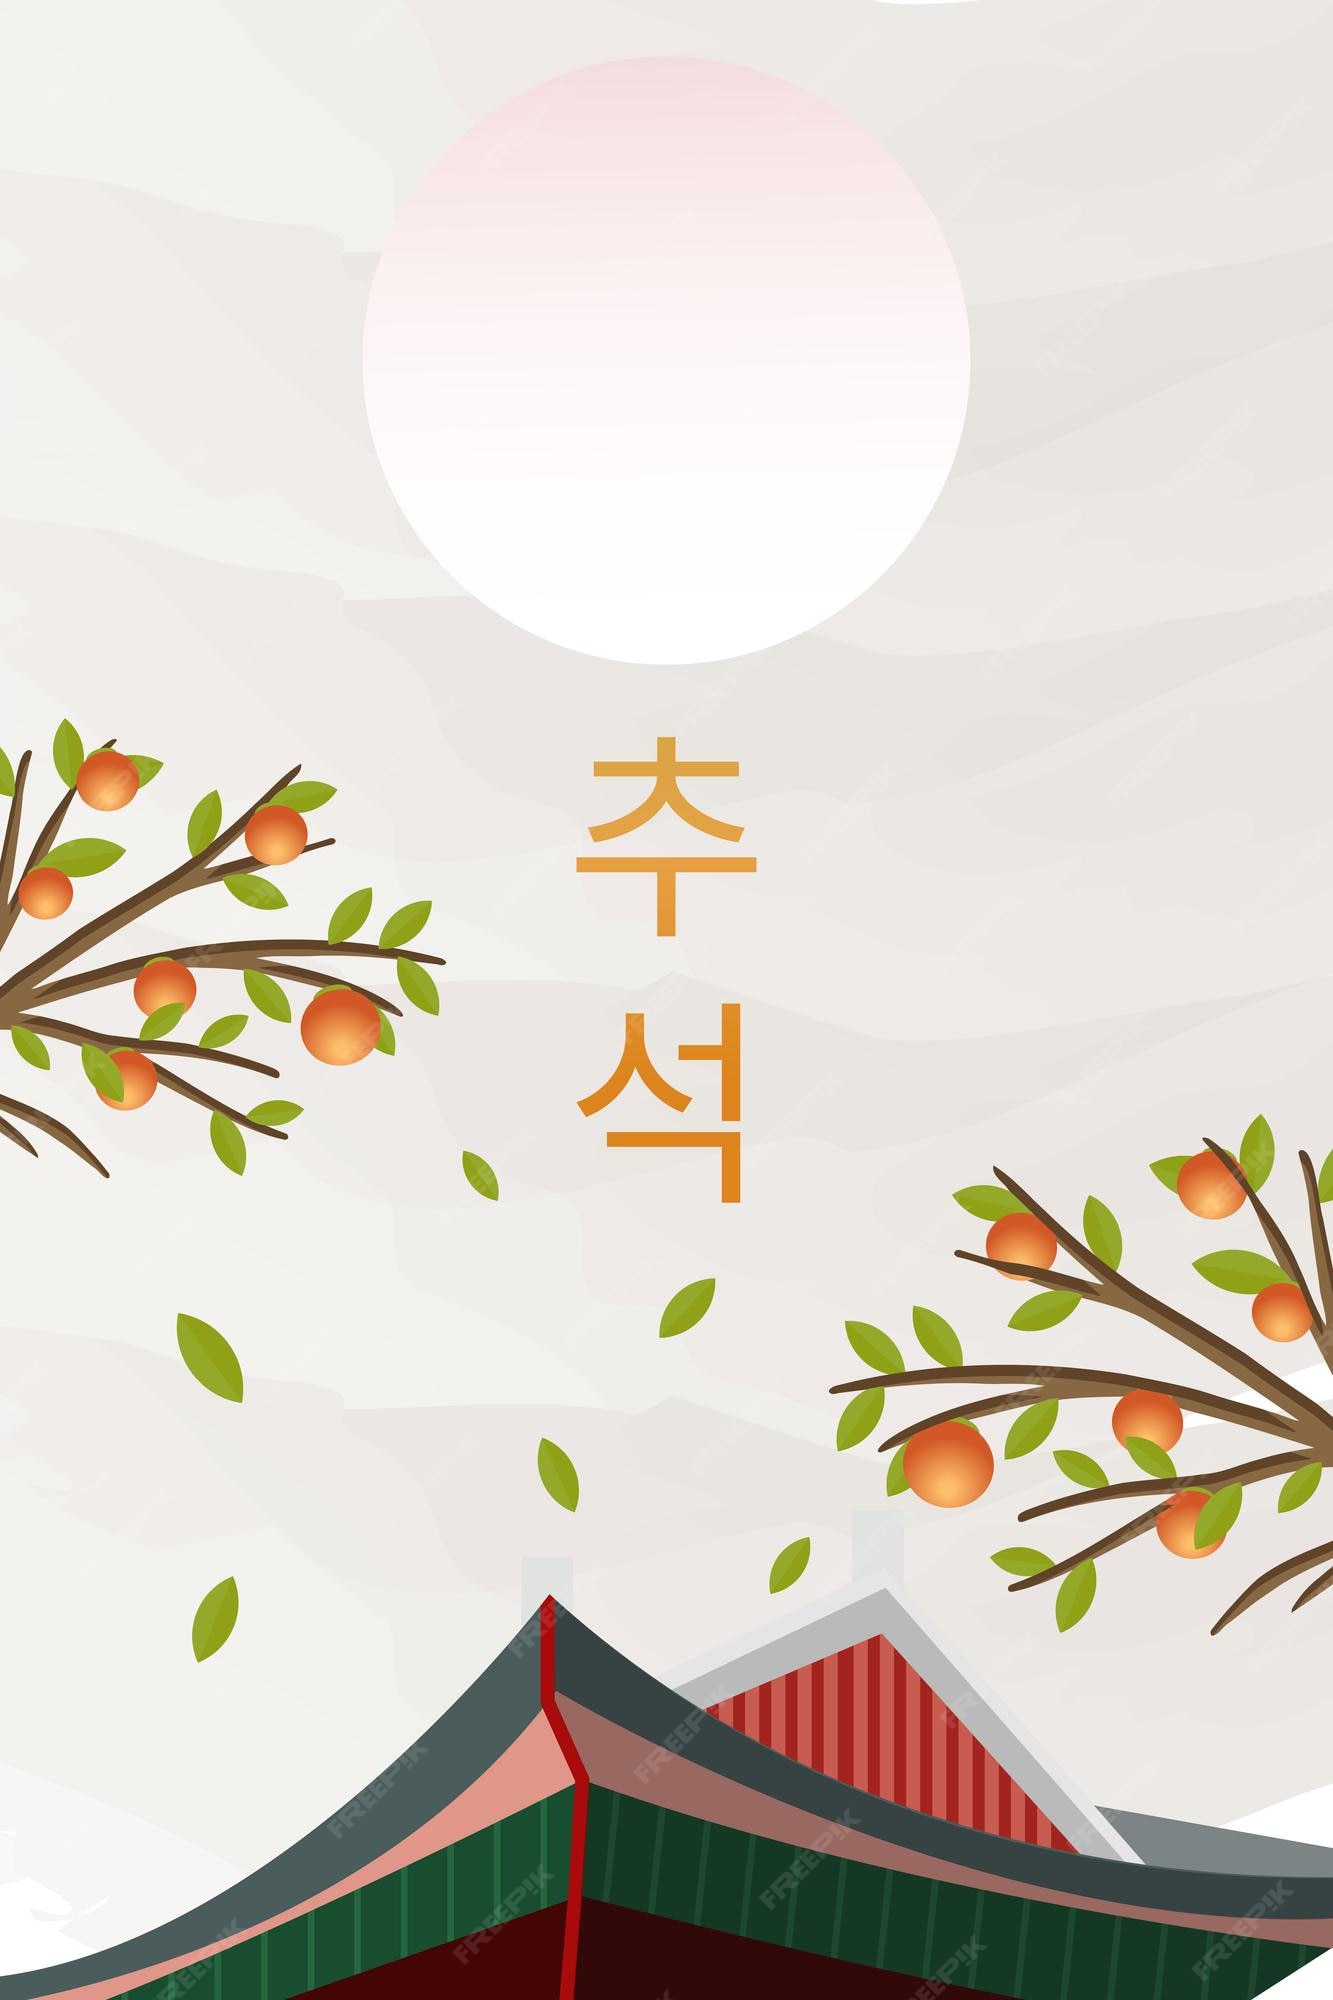 Lắng nghe lời hát truyền thống và những câu chuyện tuyệt vời của Hàn Quốc được thể hiện qua bức tranh đầy màu sắc và phong cách độc đáo. Với những hình ảnh đẹp của Hàn Quốc, bạn sẽ cảm nhận được vẻ đẹp văn hóa của đất nước này.